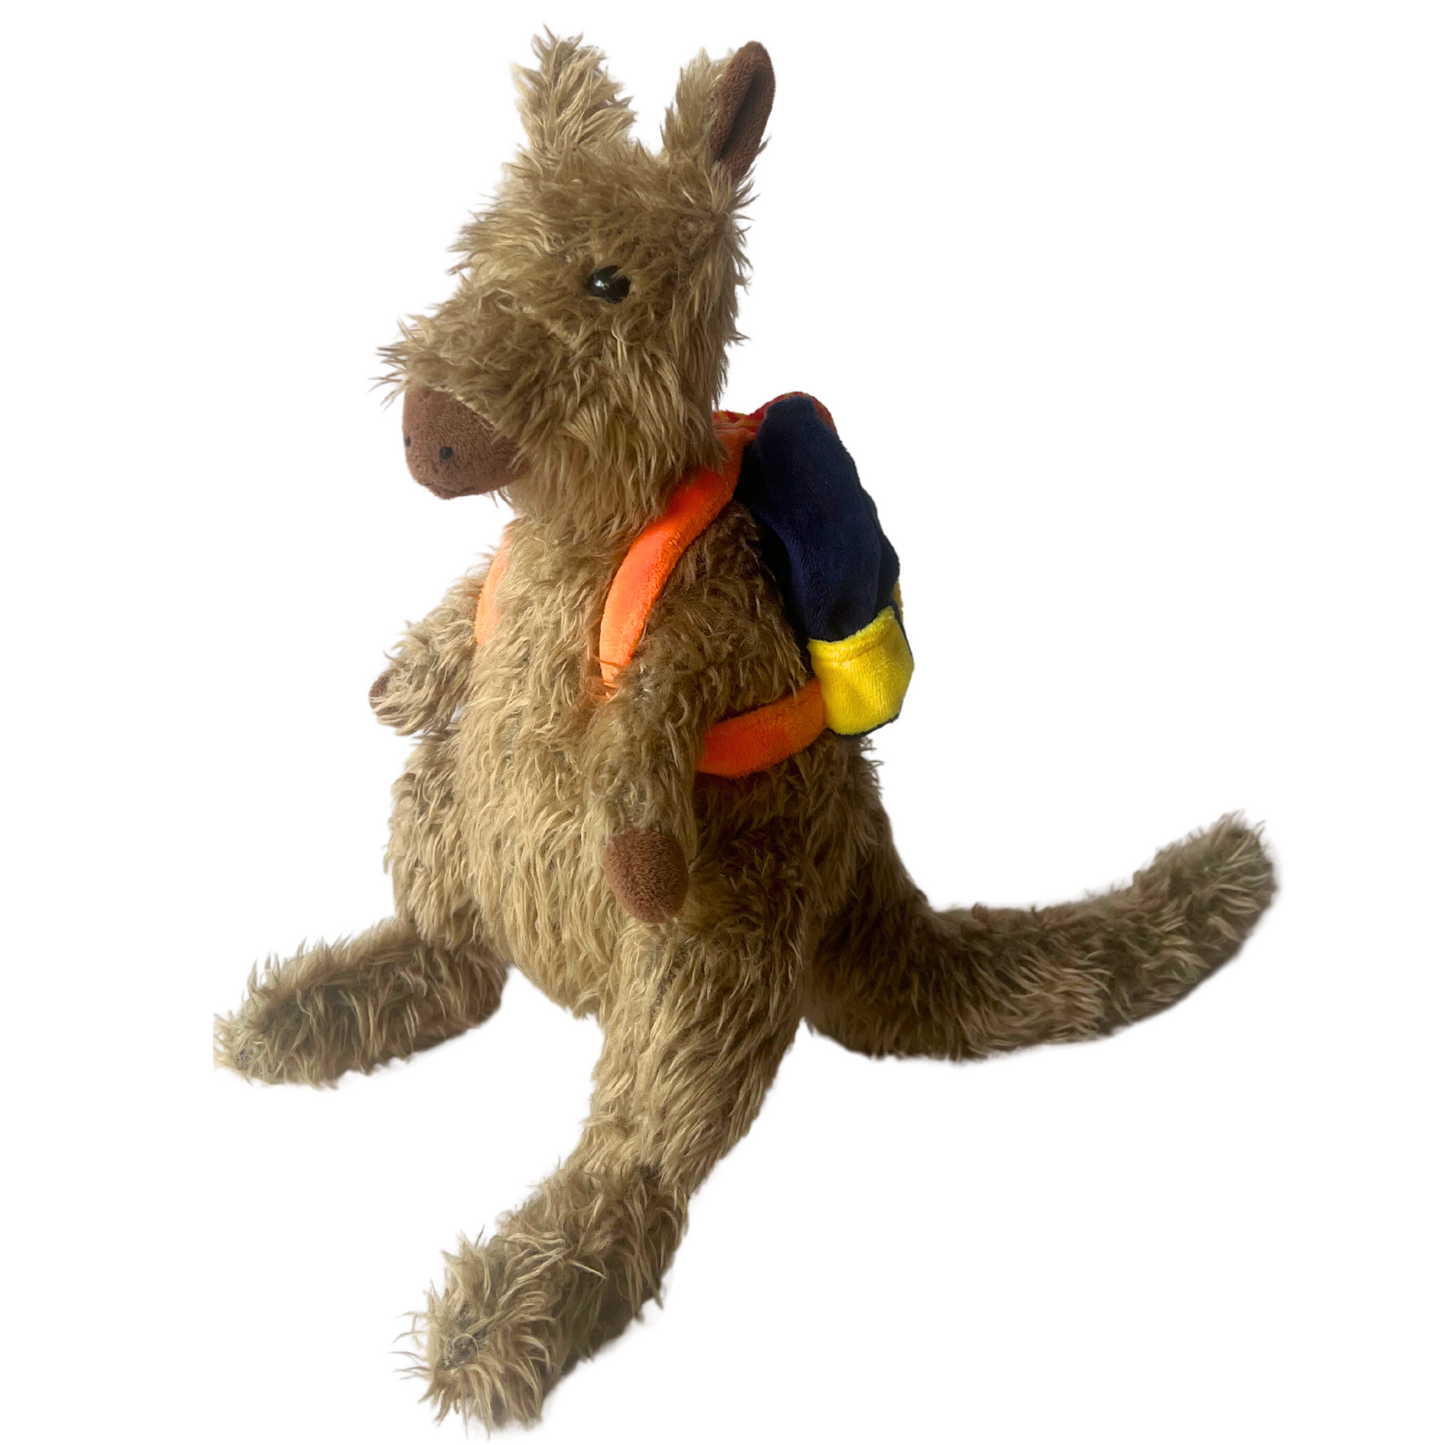 Wally the Wandering Wallaby Books & Plush Stuffed Animal BUNDLE